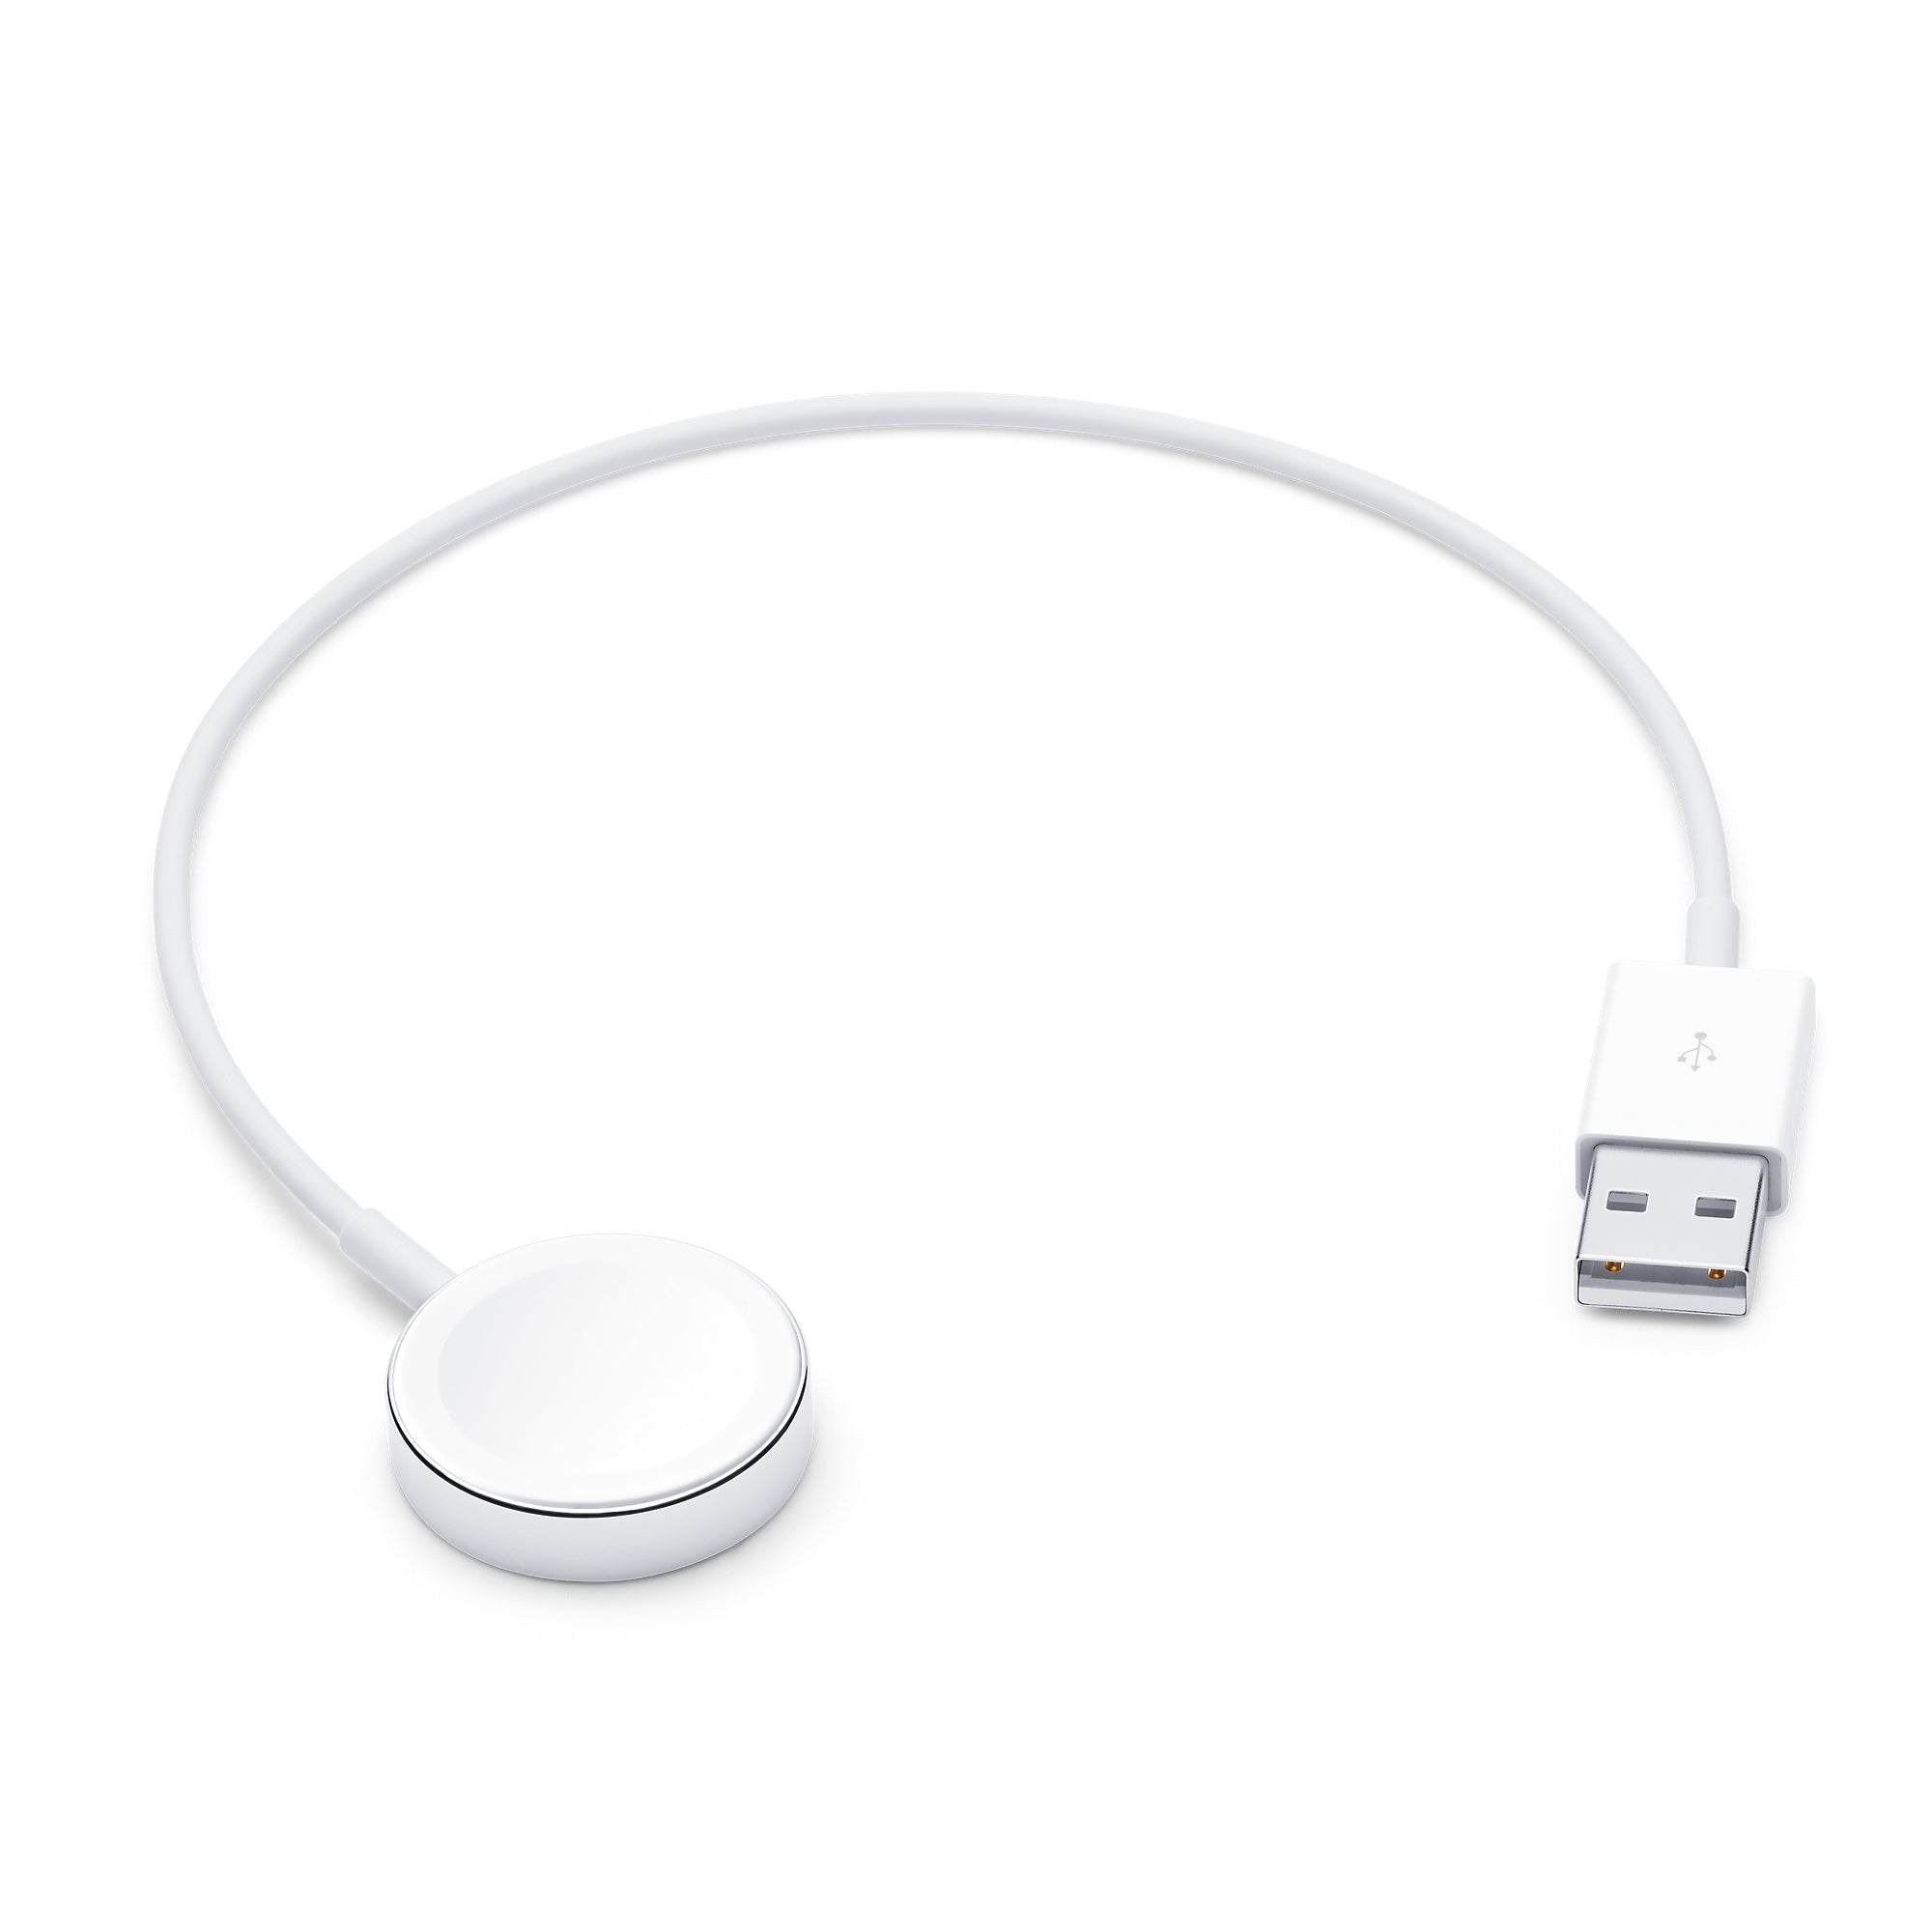 Apple cable de carga magnética para el Apple Watch - iShop